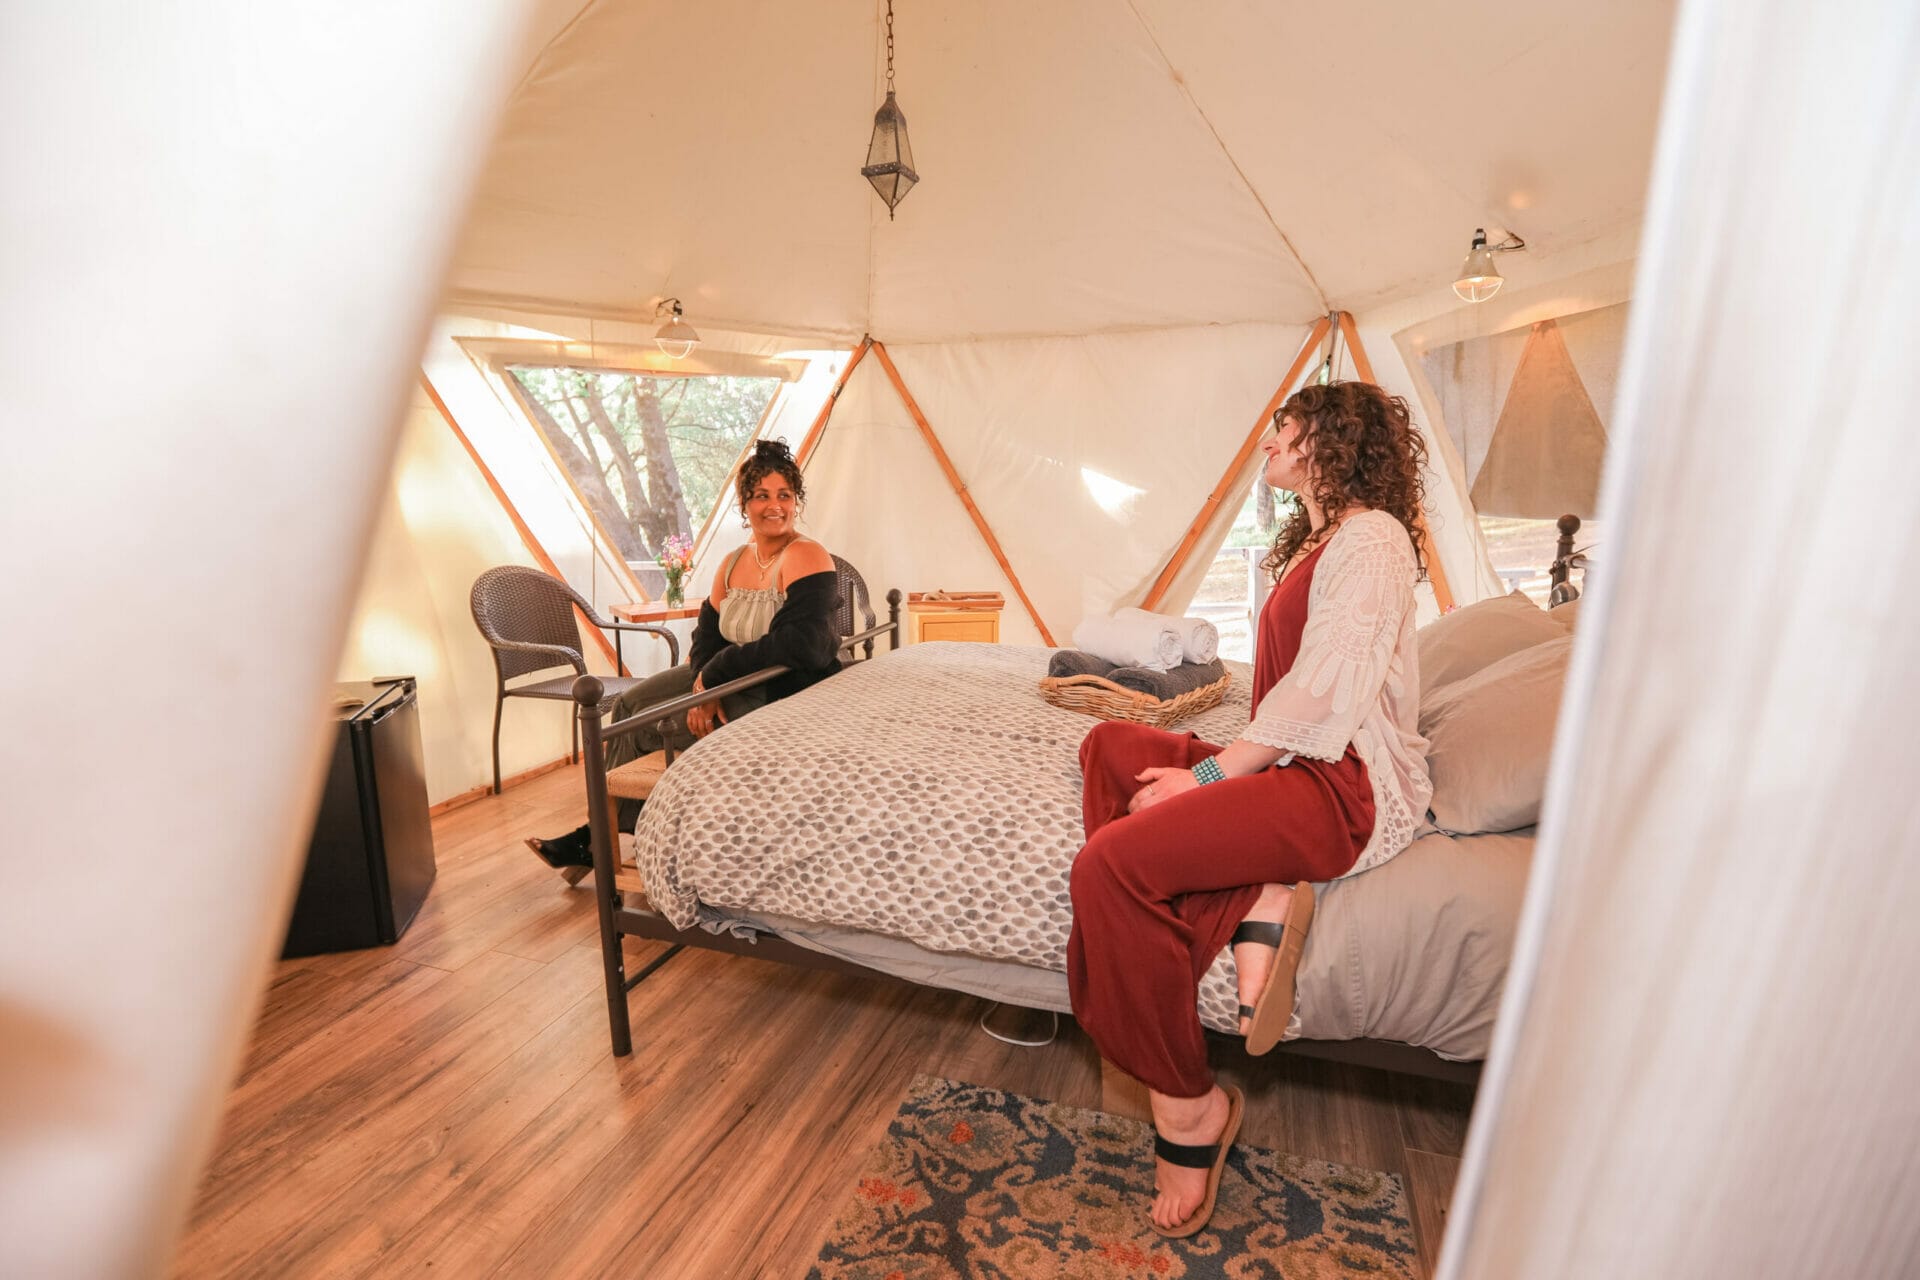 Reverie retreat inside yurt two woman speaking